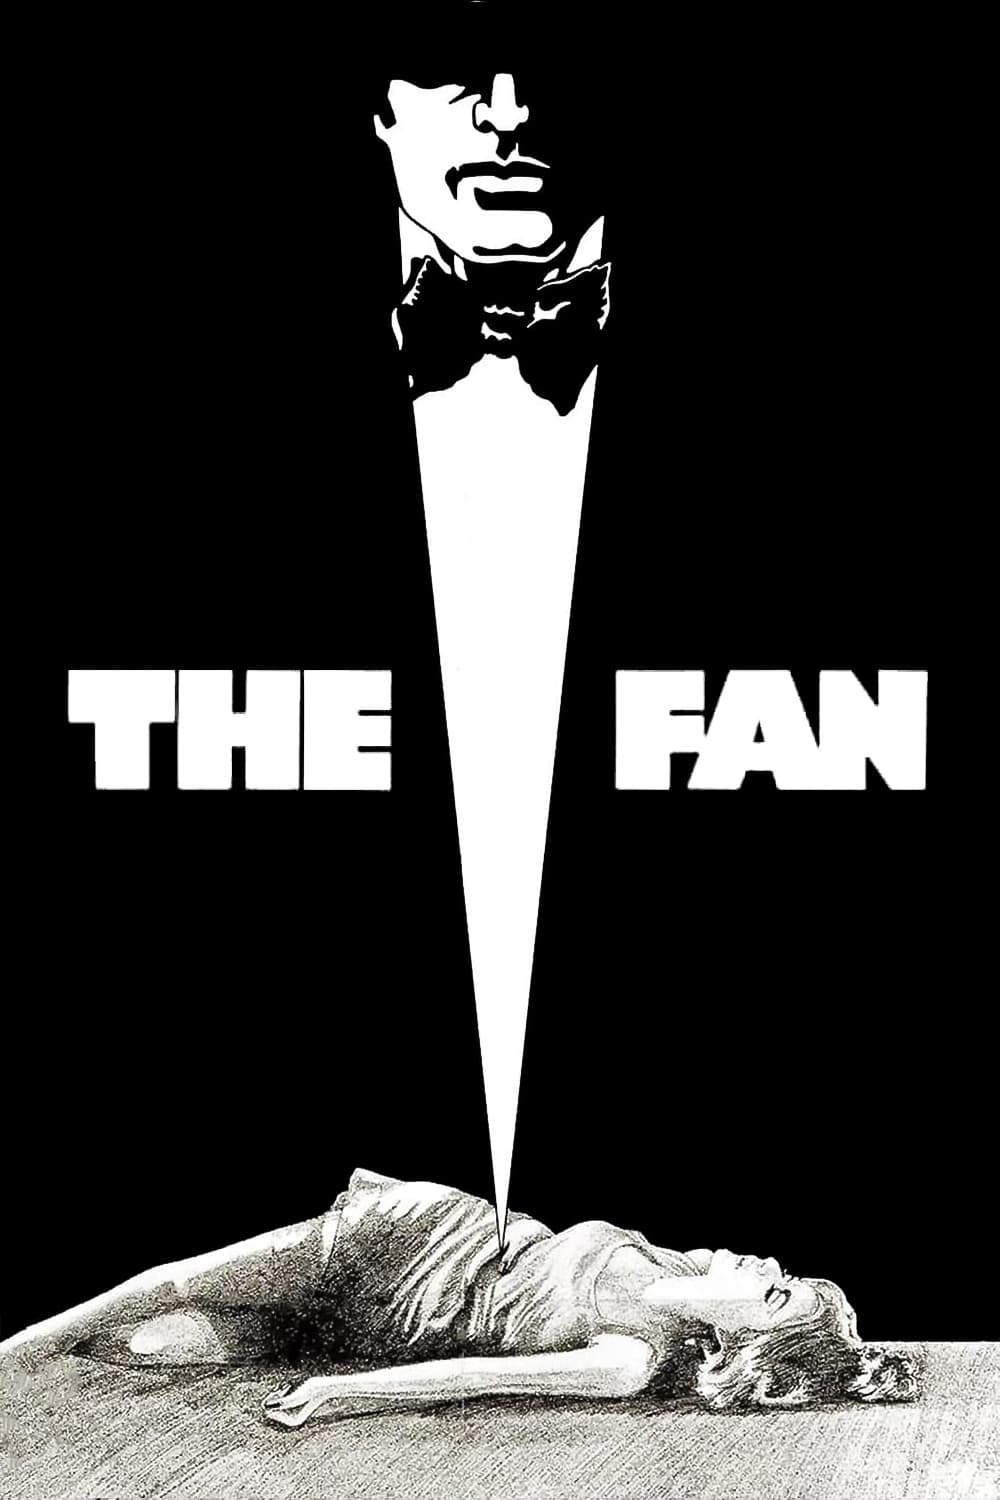 The Fan (1981)